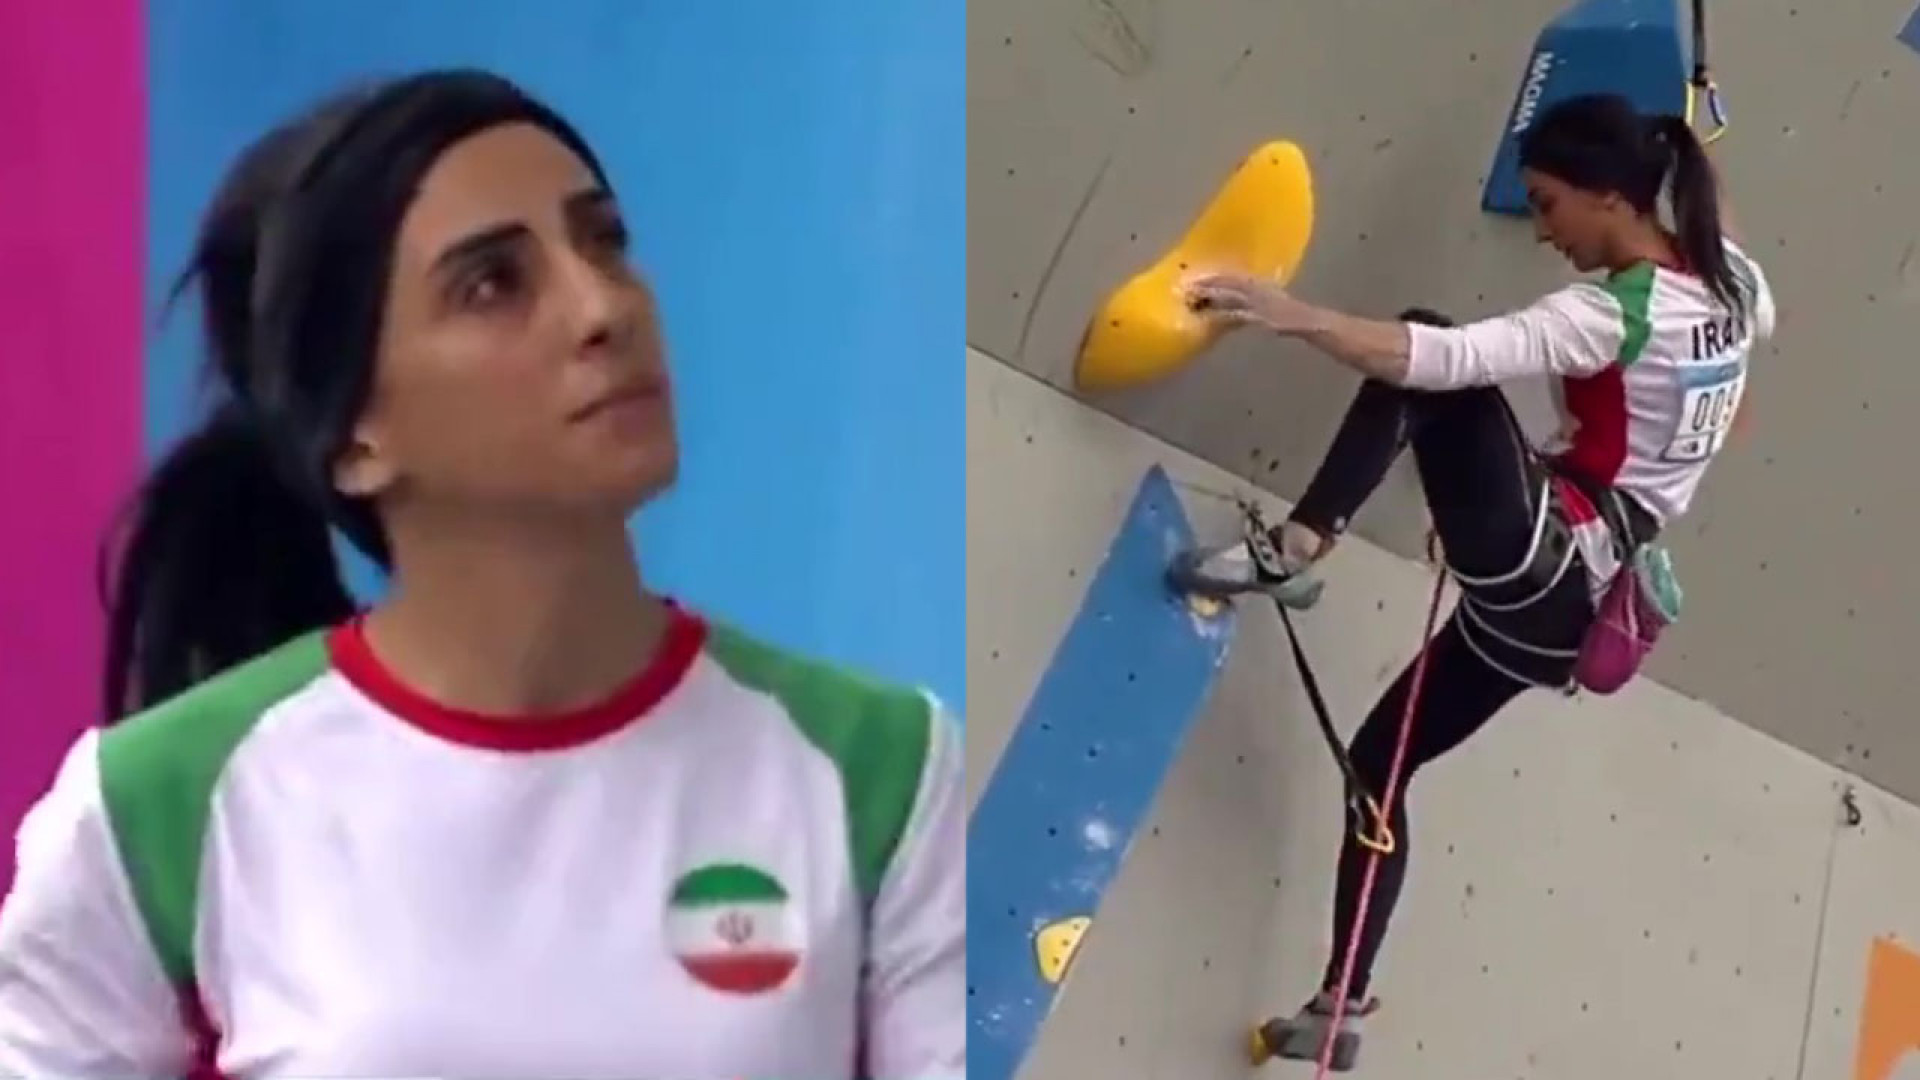 Спортсменка из Ирана выступила без хиджаба на чемпионате по скалолазанию. На родине ей может грозить тюремное заключение